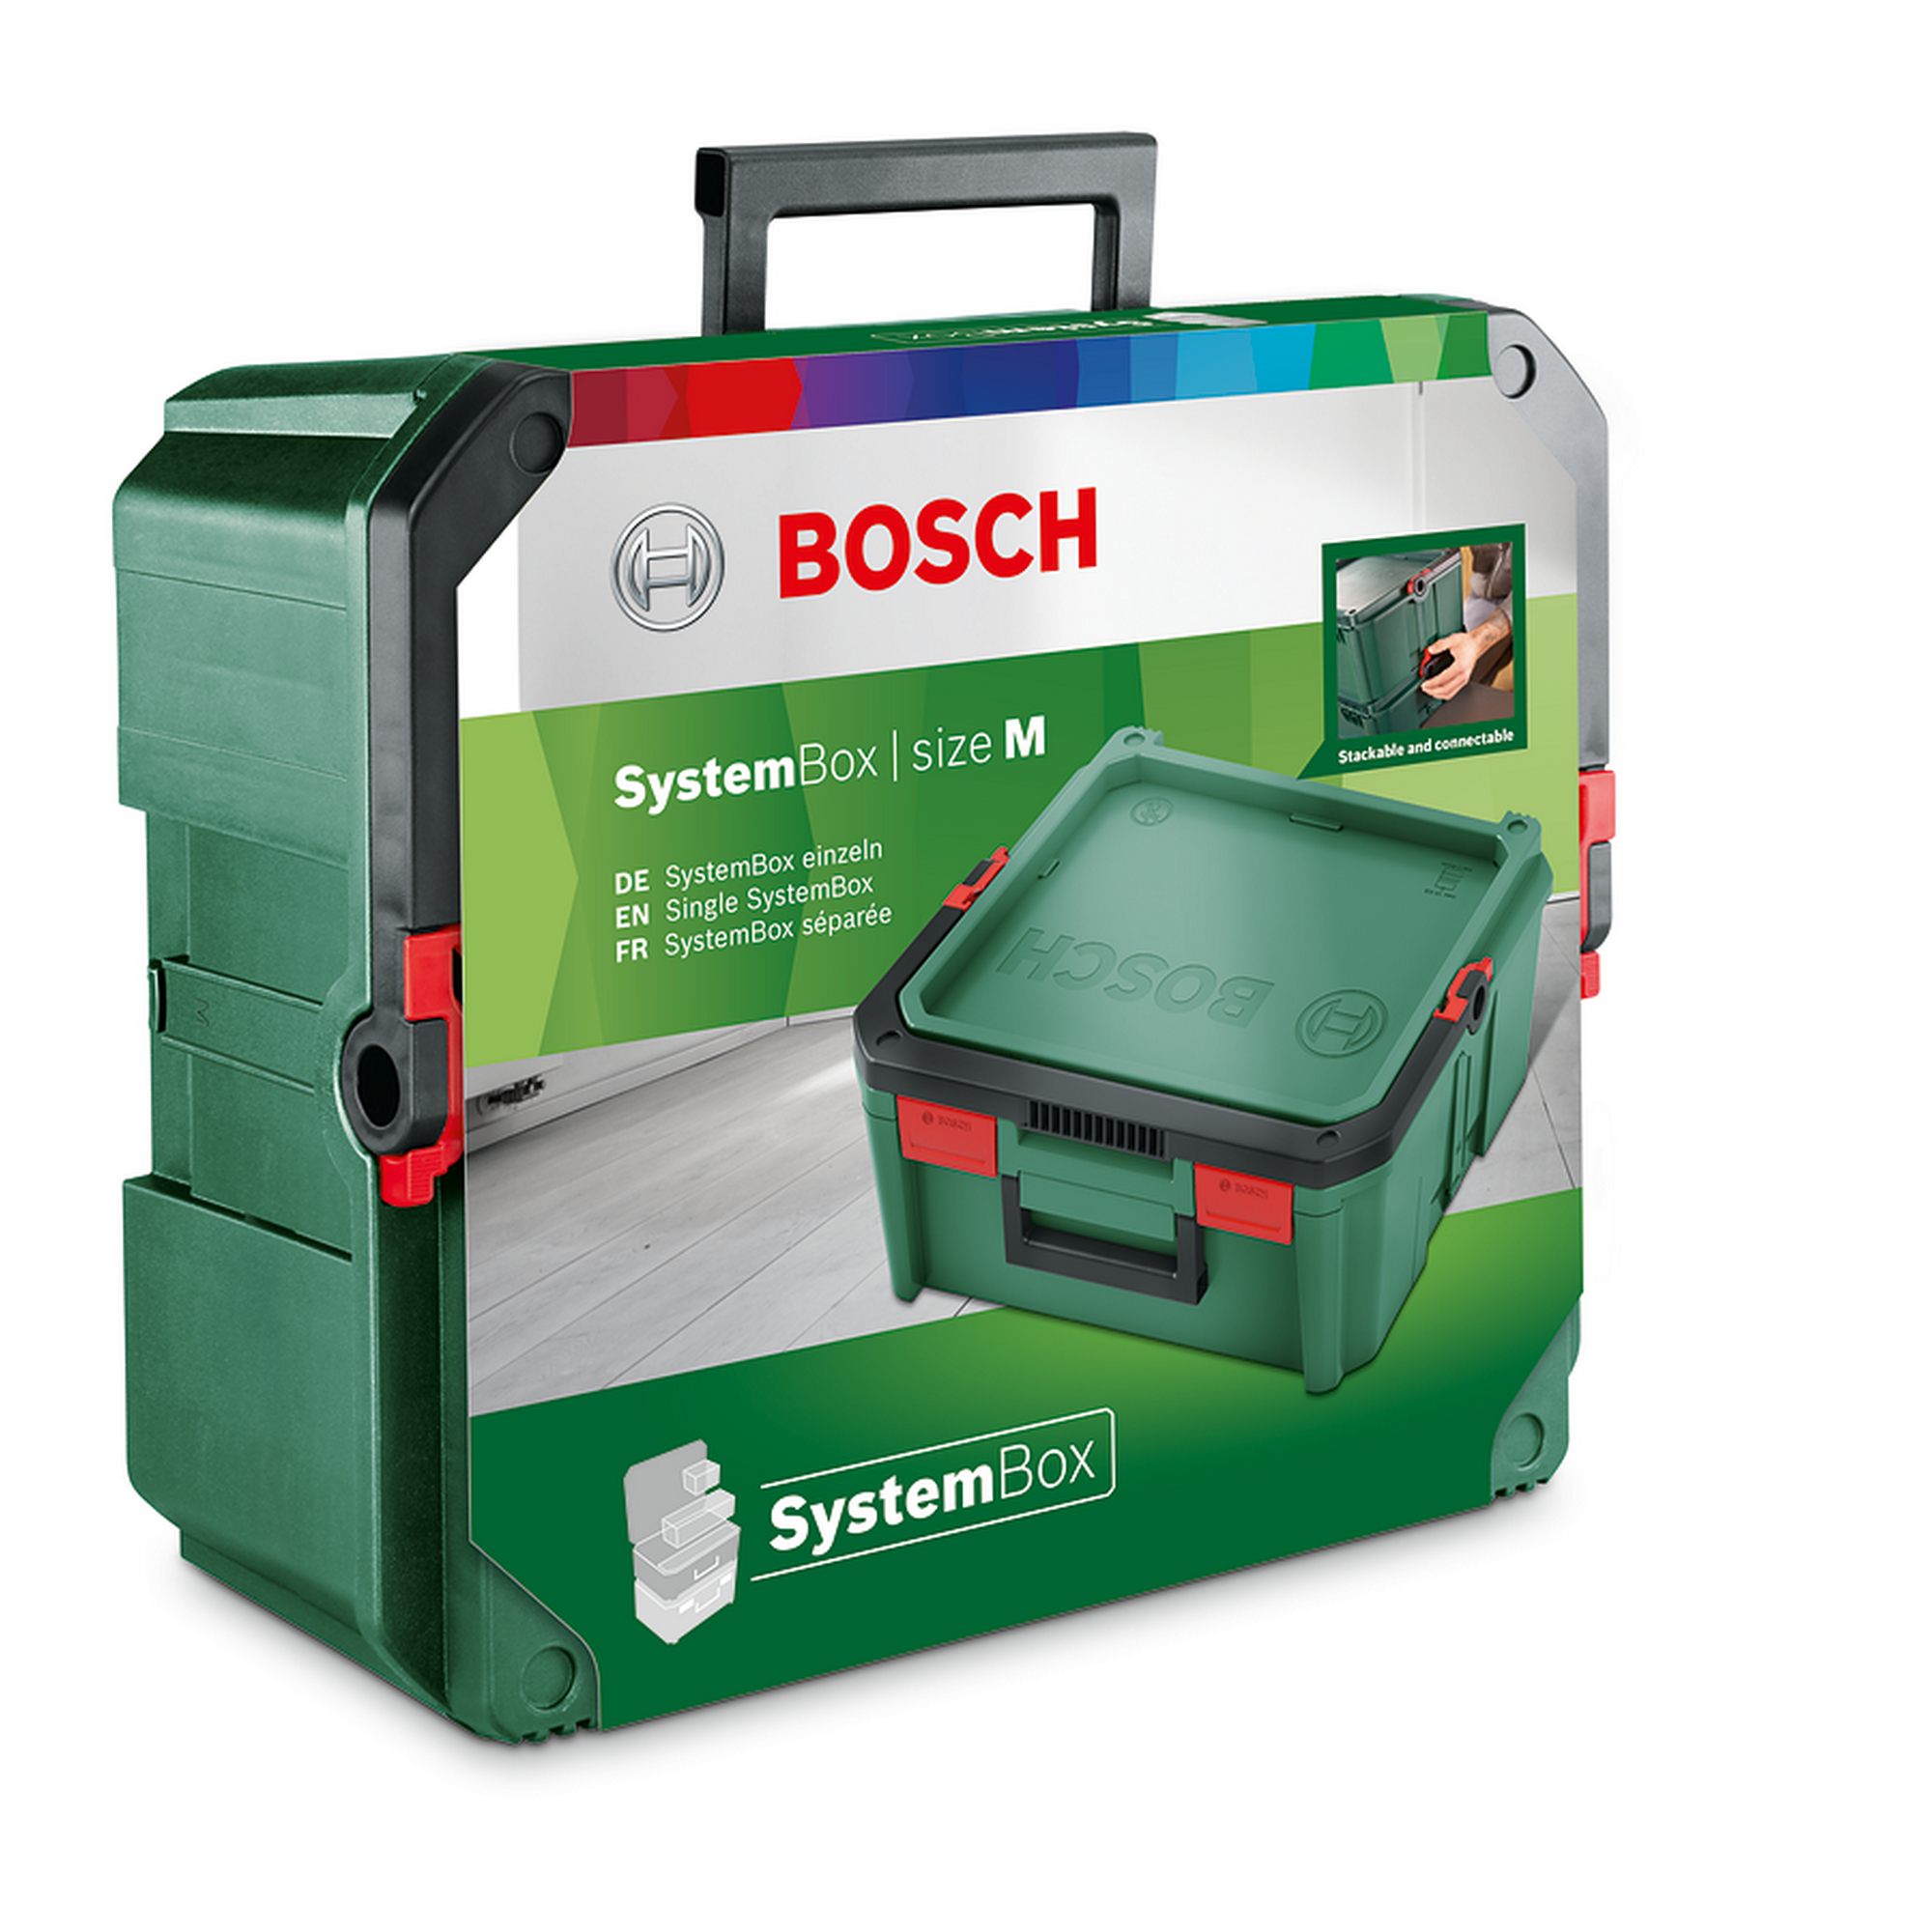 Einzelne SystemBox grün 34,3 x 39,1 x 17,1 cm + product picture